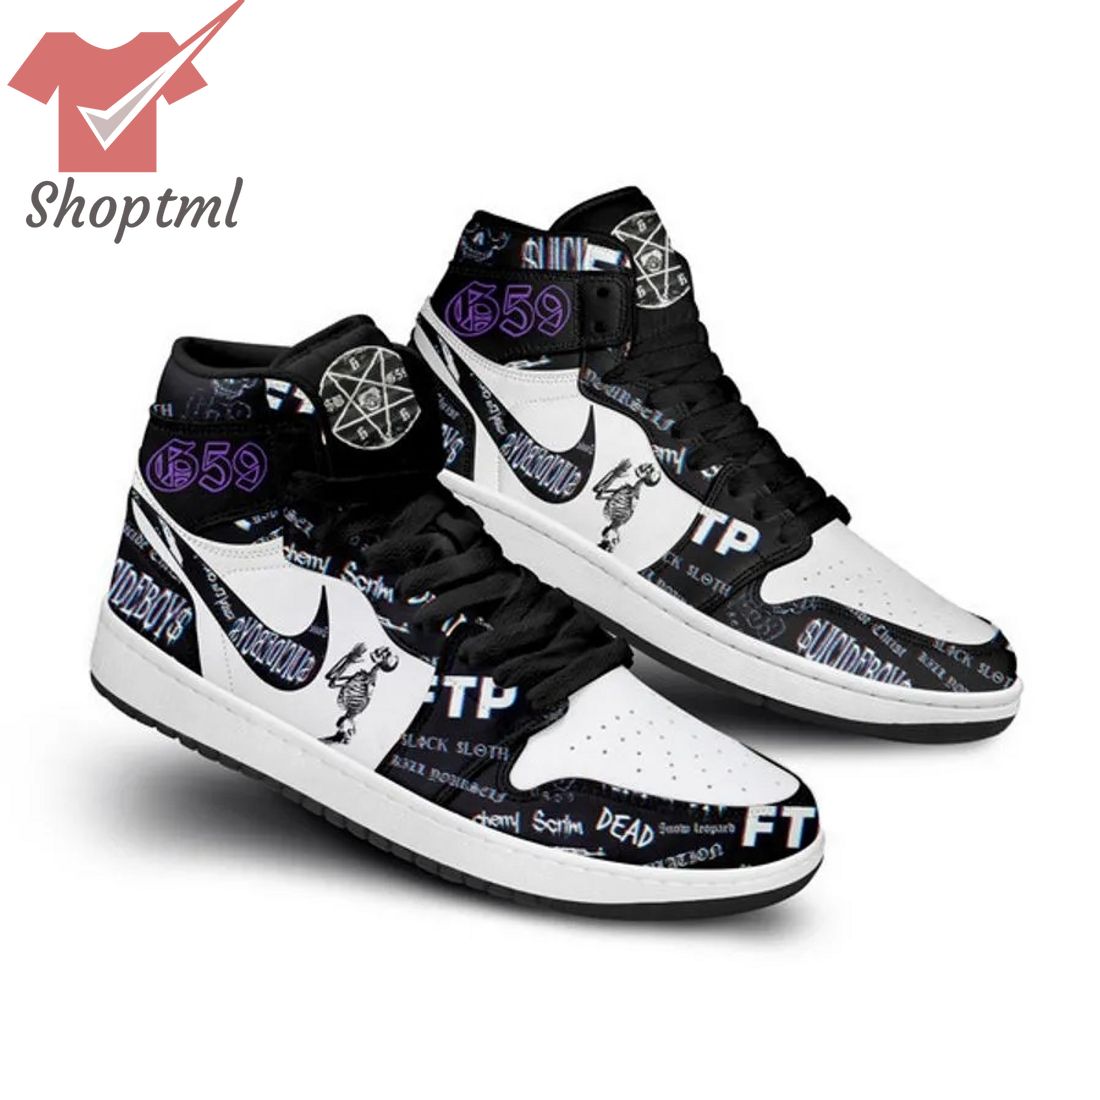 Suicideboys Air Jordan 1 Sneaker Shoes